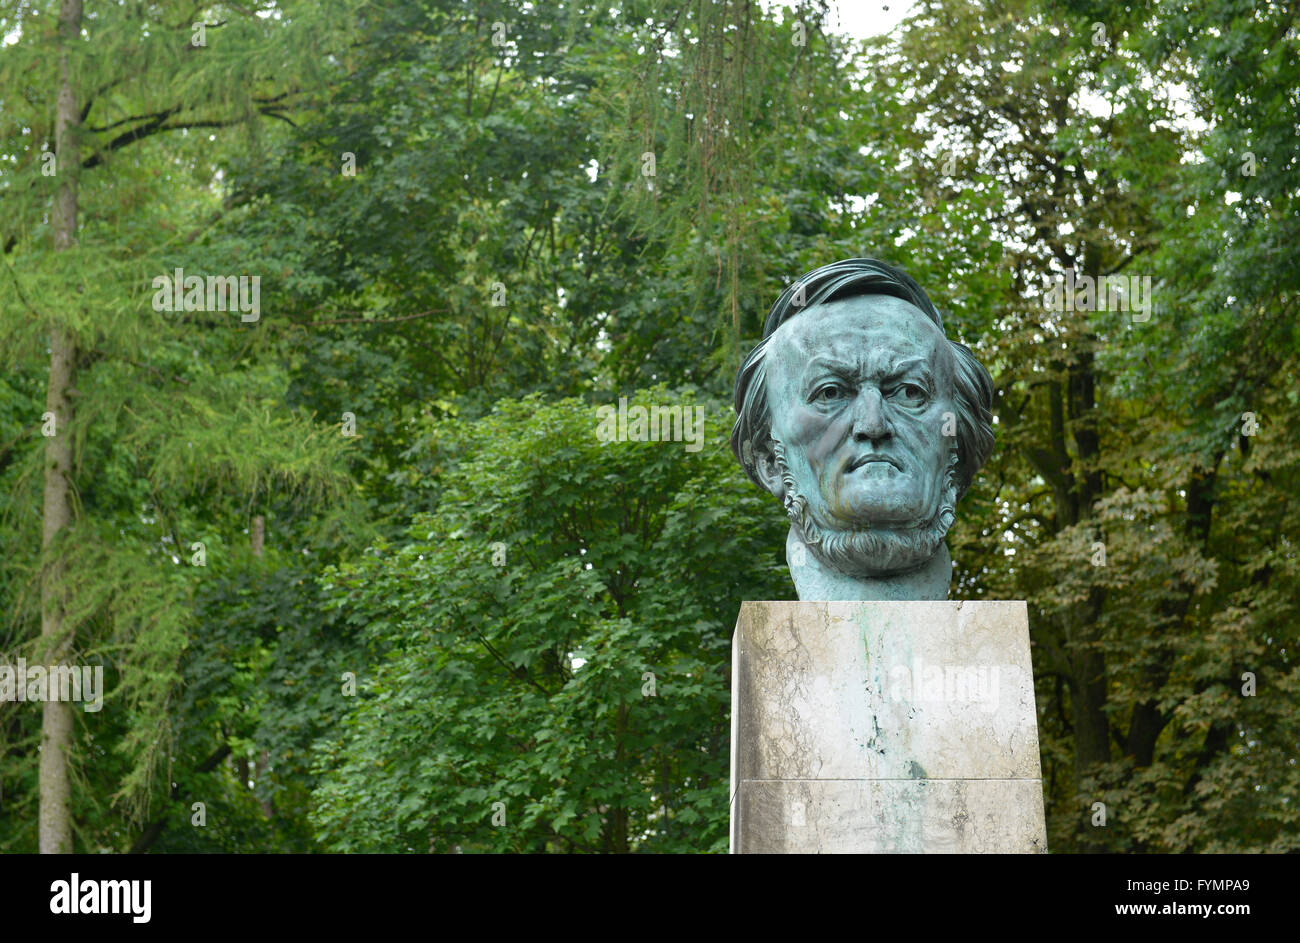 Bueste Richard Wagner, Festspielhuegel, Bayreuth, Bayern, Deutschland Stock Photo